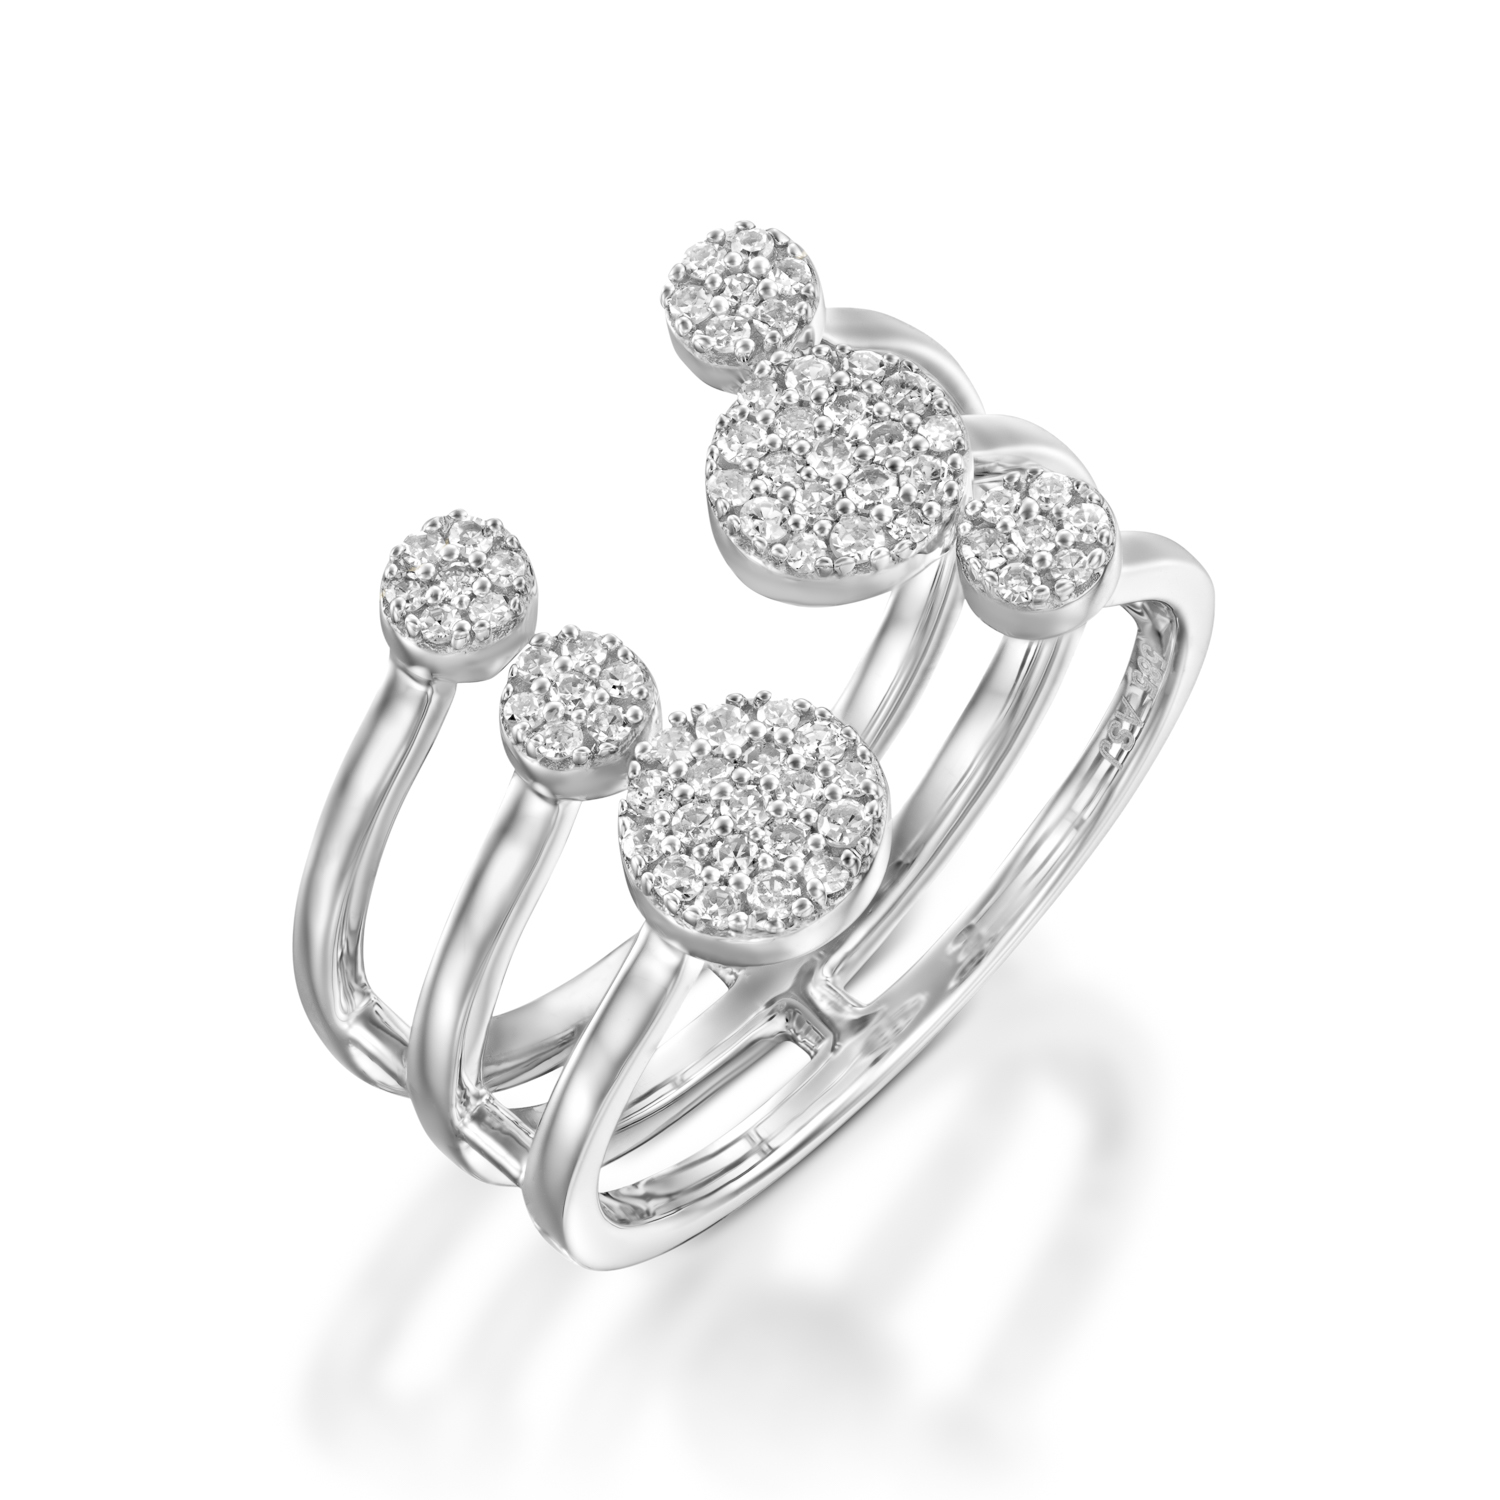 טבעת צלילי האהבה זהב לבן משובץ יהלומים של סנדרה רינגלר לרשת אימפרס ב-2,690שח במקום 5,918שח. צילום - יחצ